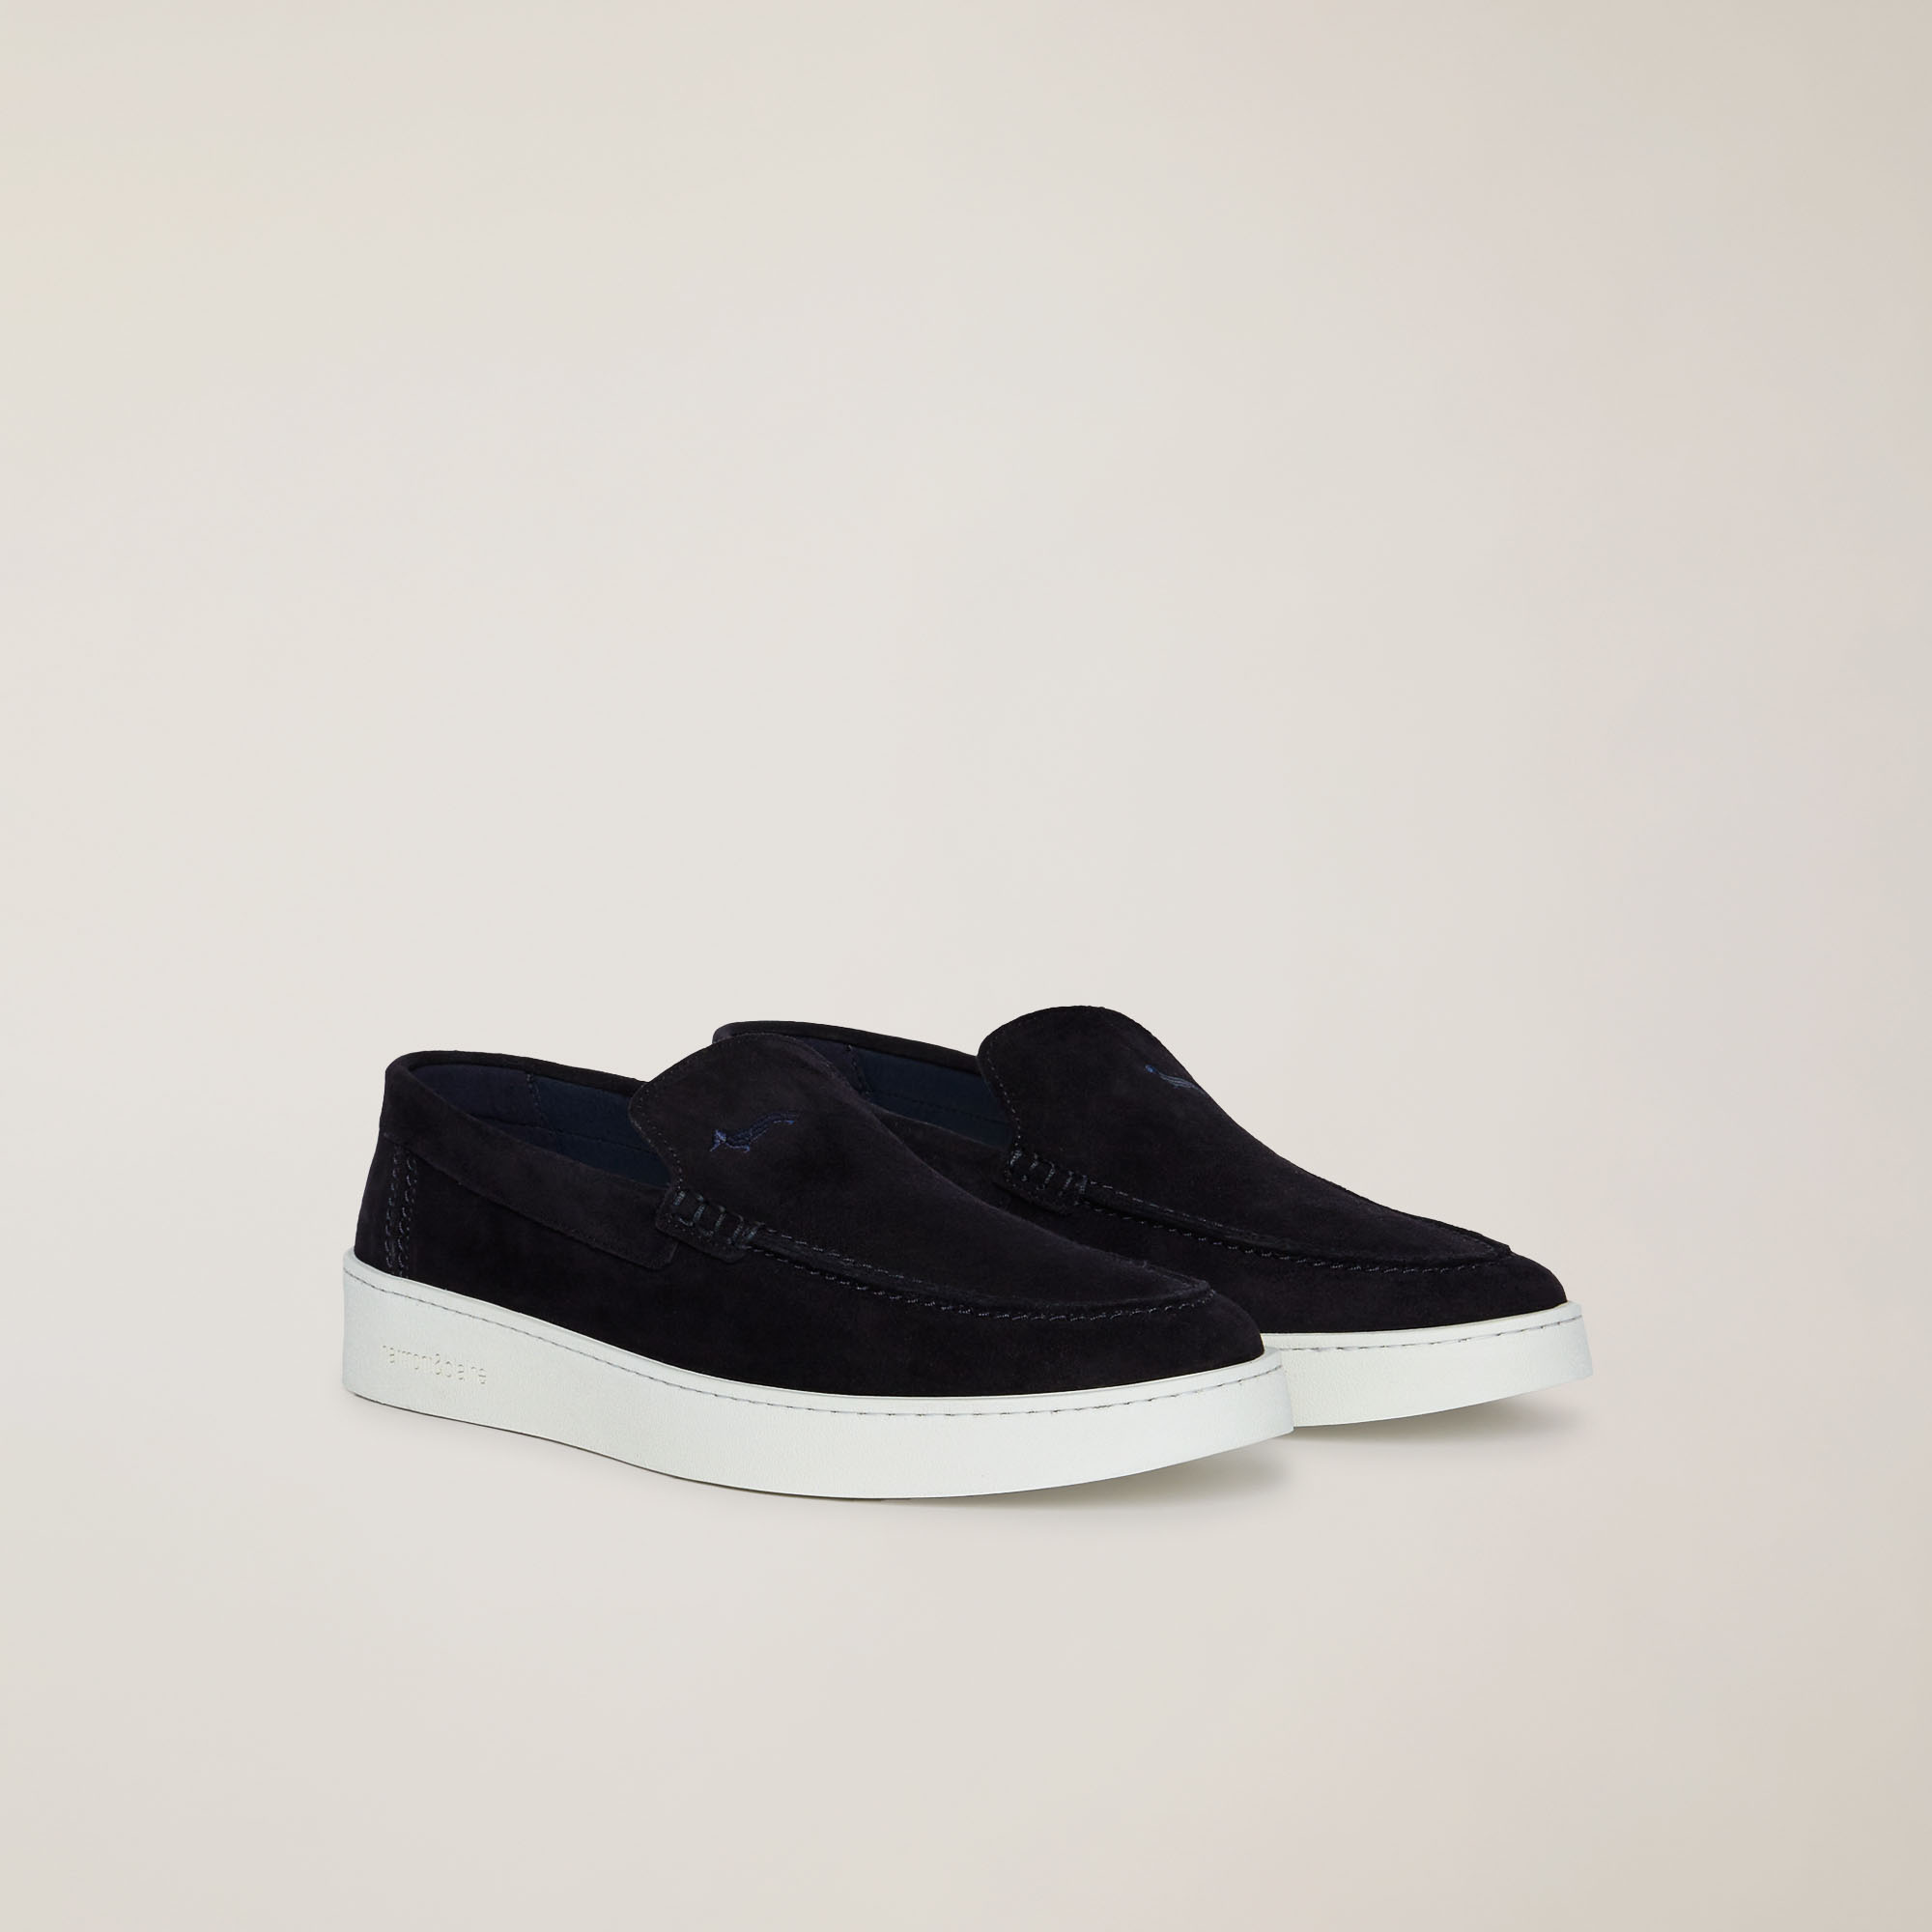 Slip-On Leder-Sneaker, Blau, large image number 1